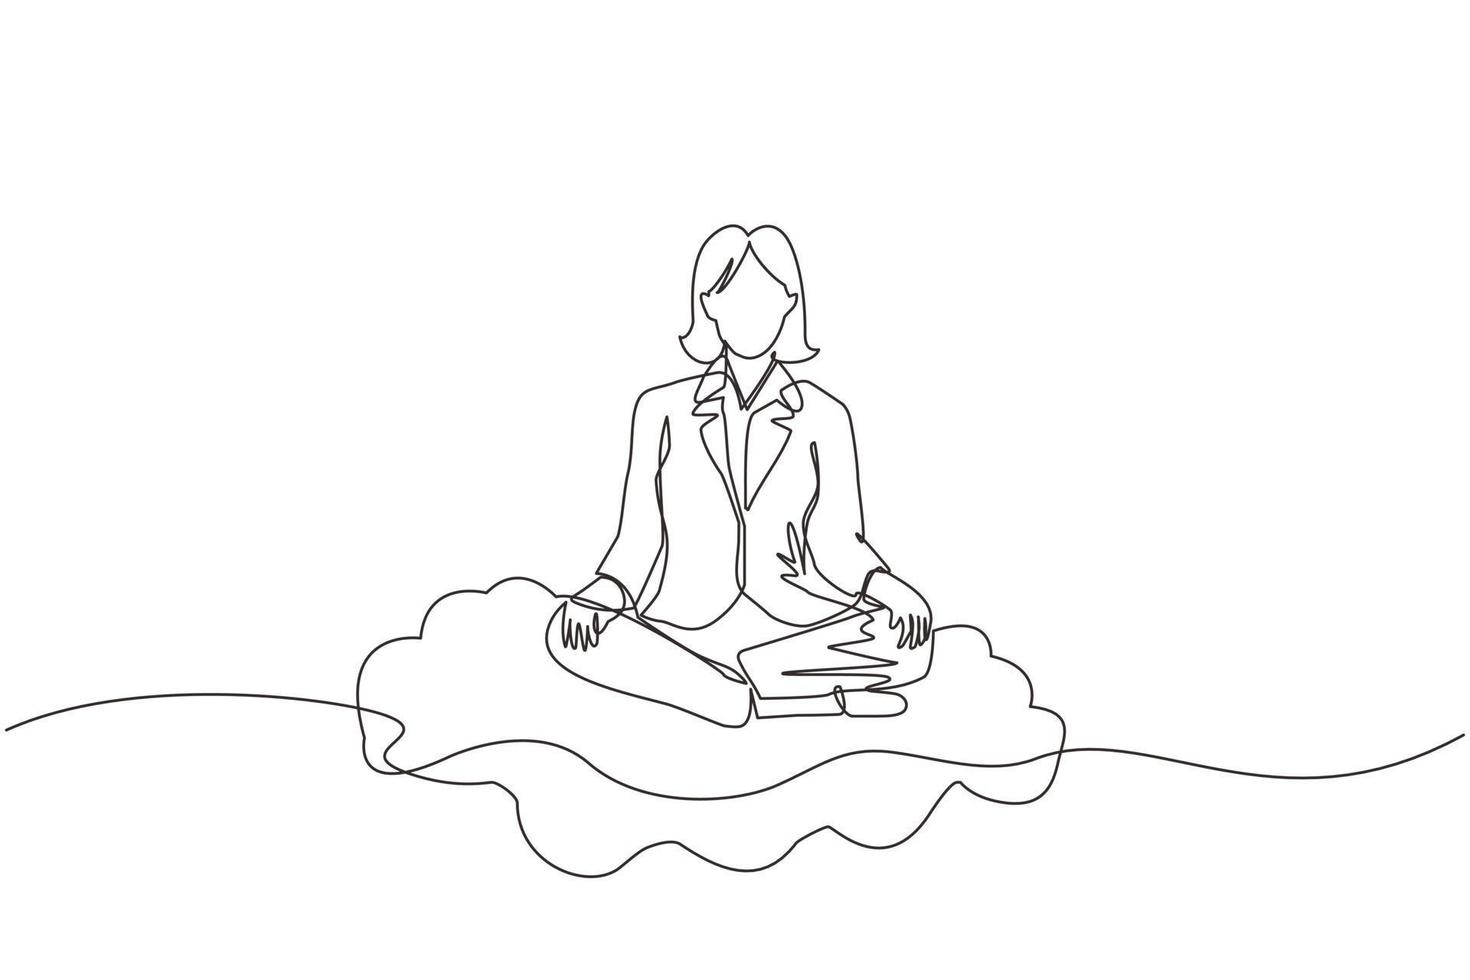 continu één lijntekening kantoormedewerker of zakenvrouw ontspant, mediteert in lotuspositie op wolken. vrolijke vrouw ontspannen met yoga of meditatie pose. enkele lijn tekenen ontwerp vectorafbeelding vector